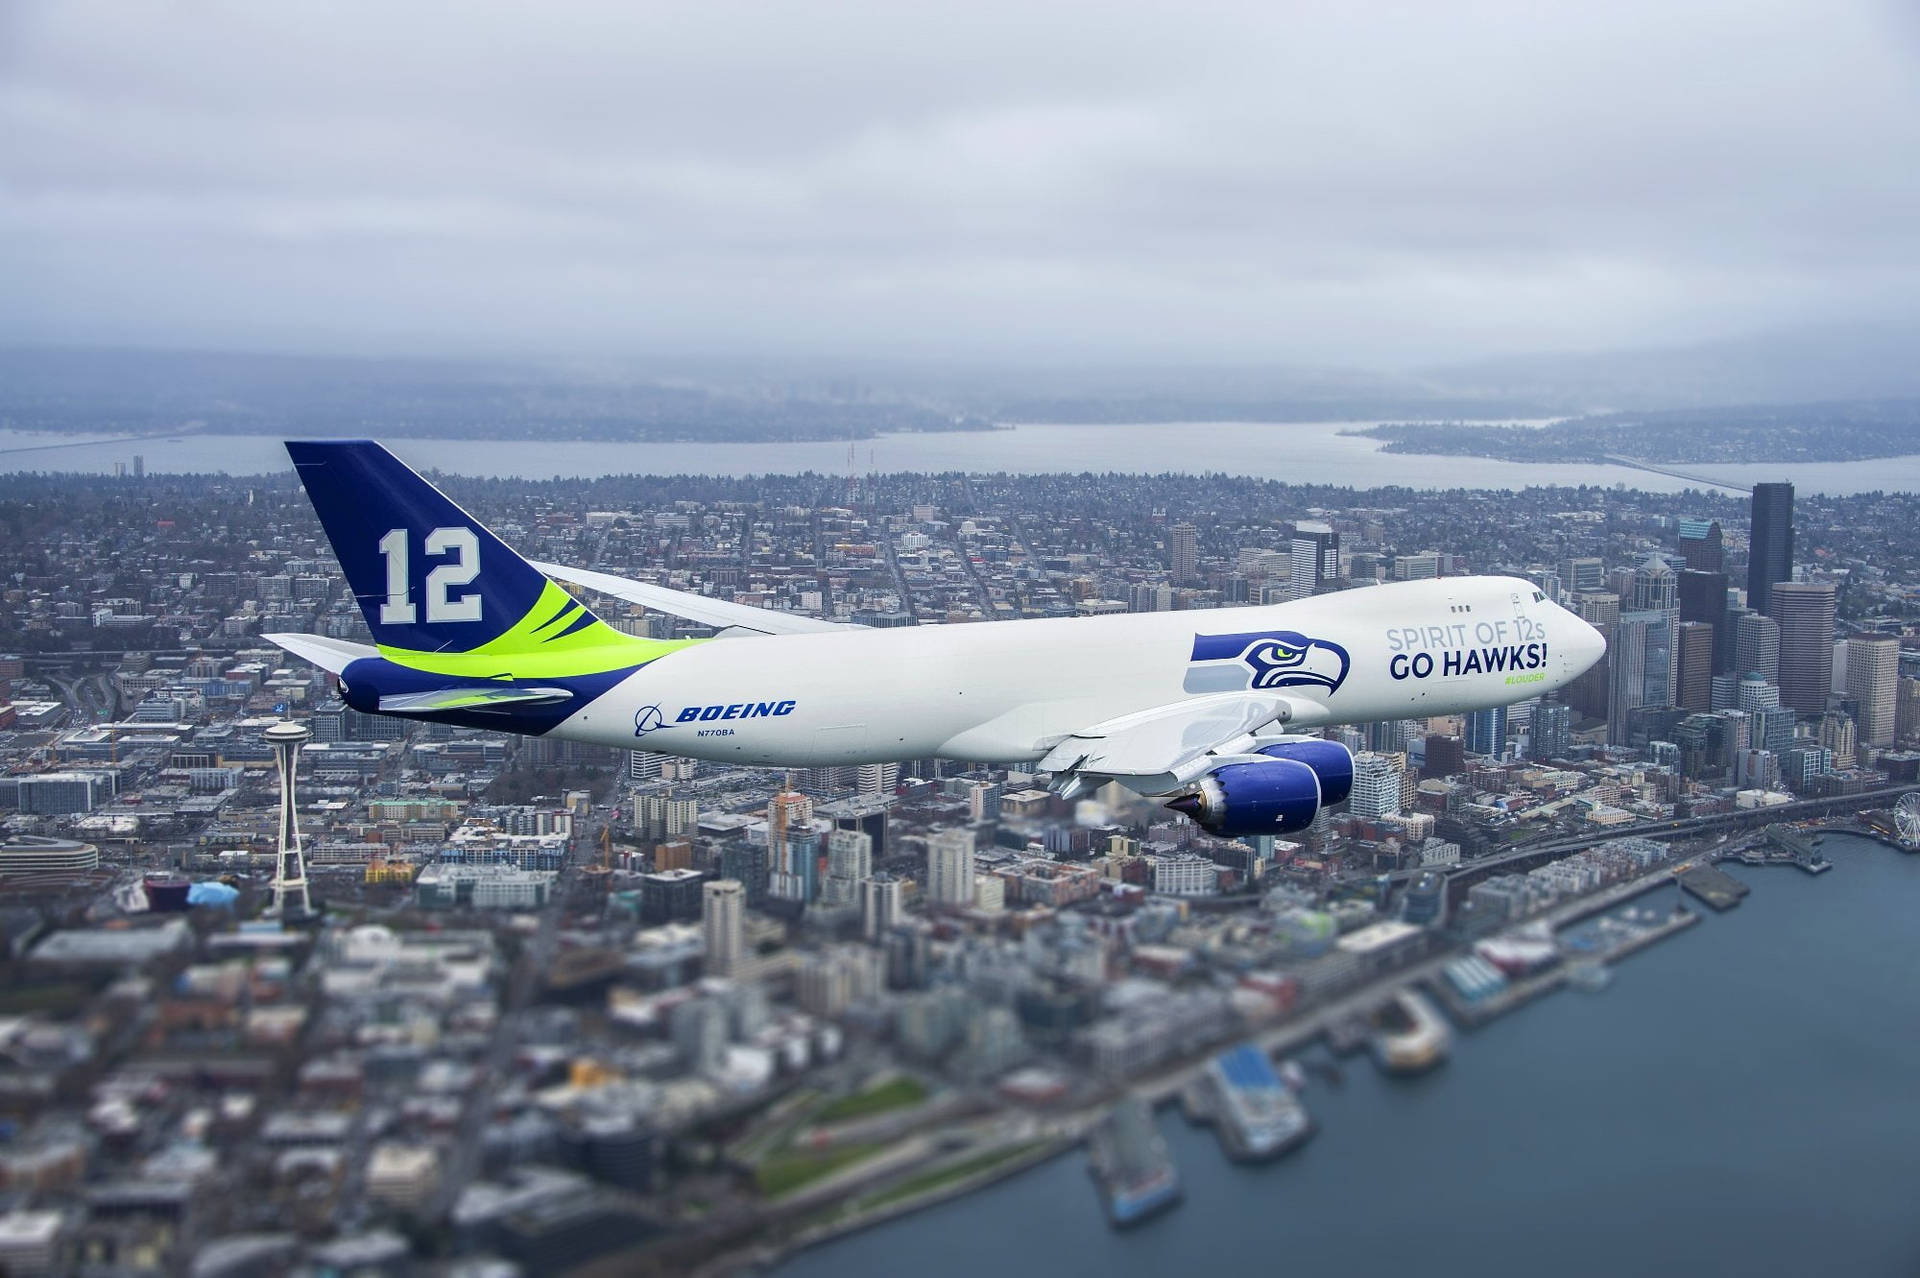 Boeing Seattle Seahawks 747